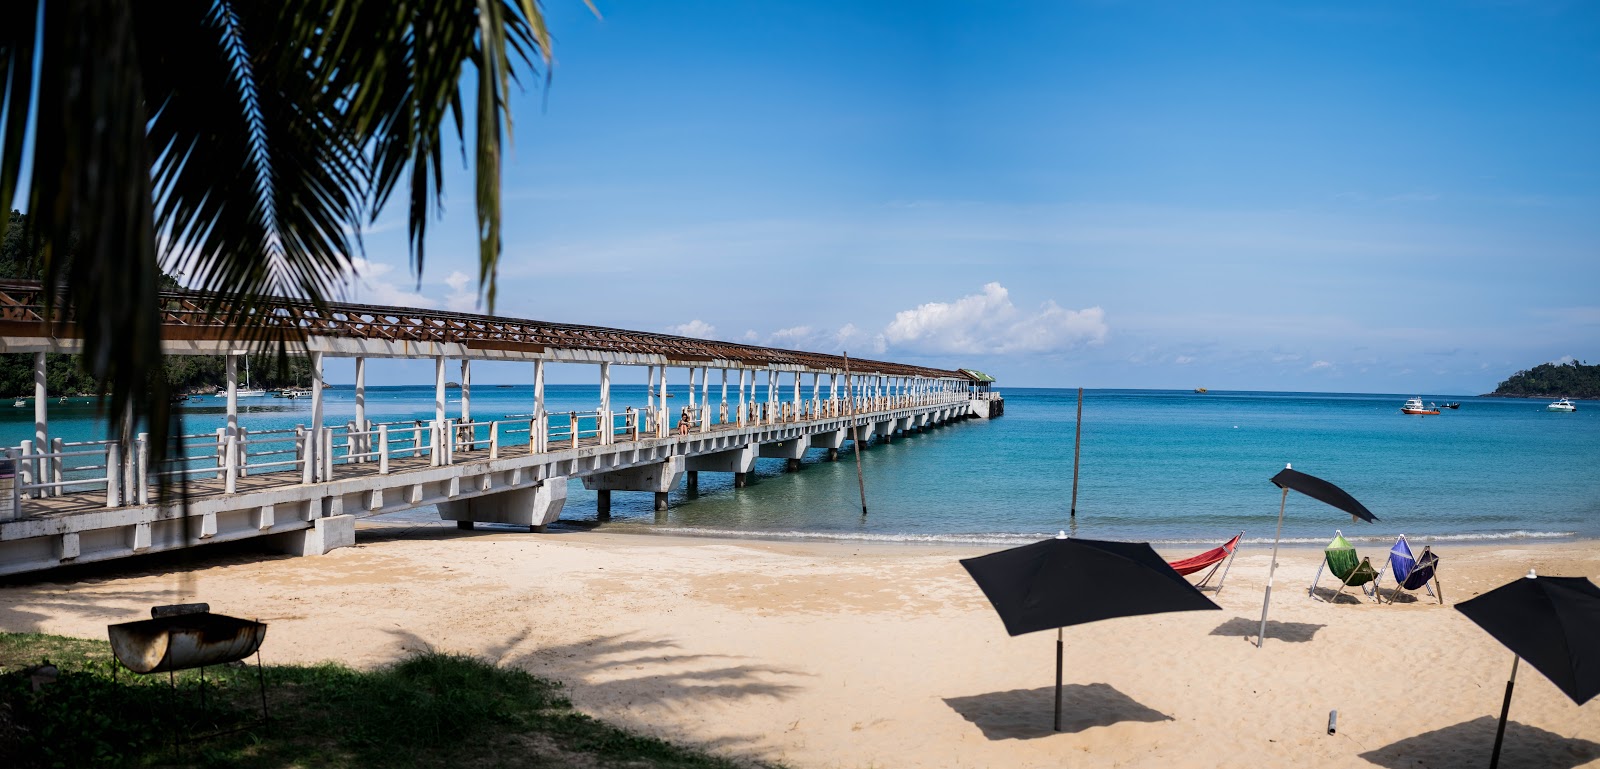 Juara Beach'in fotoğrafı kısmen otel alanı